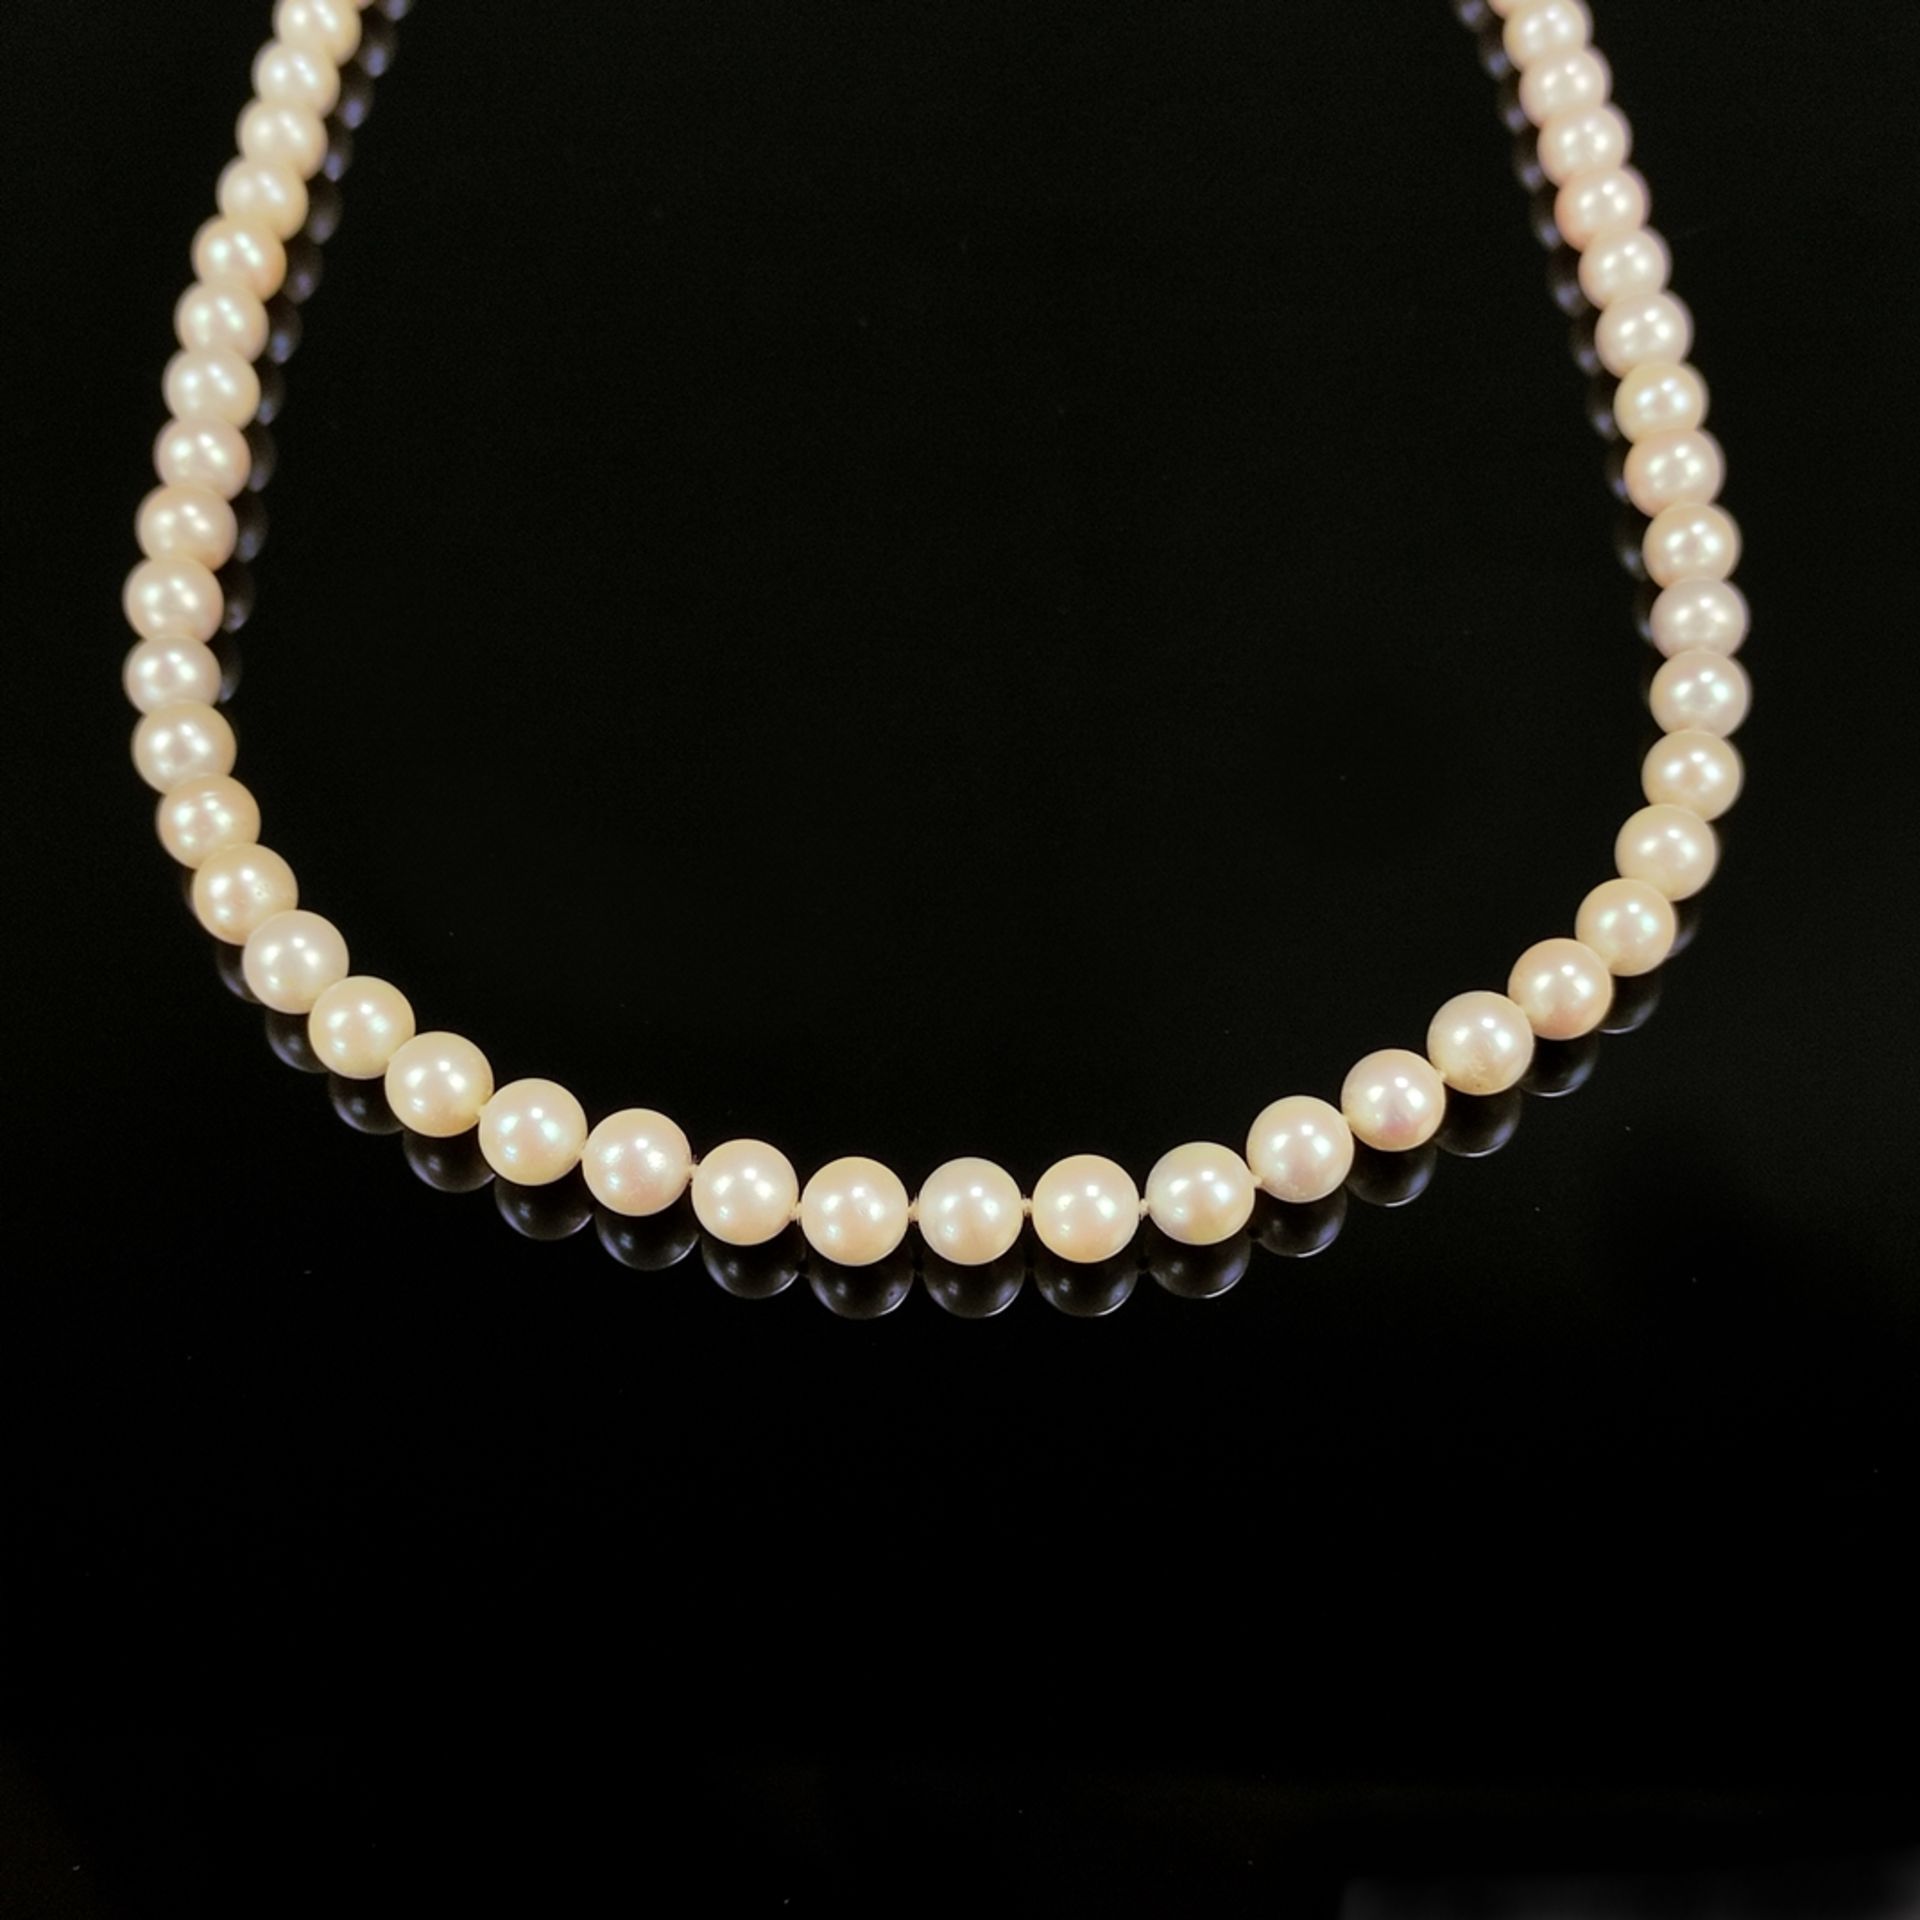 Perlenkette, 585/14K Gelb-/ Weißgold Kugelschließe (punziert), Gesamtgewicht 40,6g, Perlen im Durch